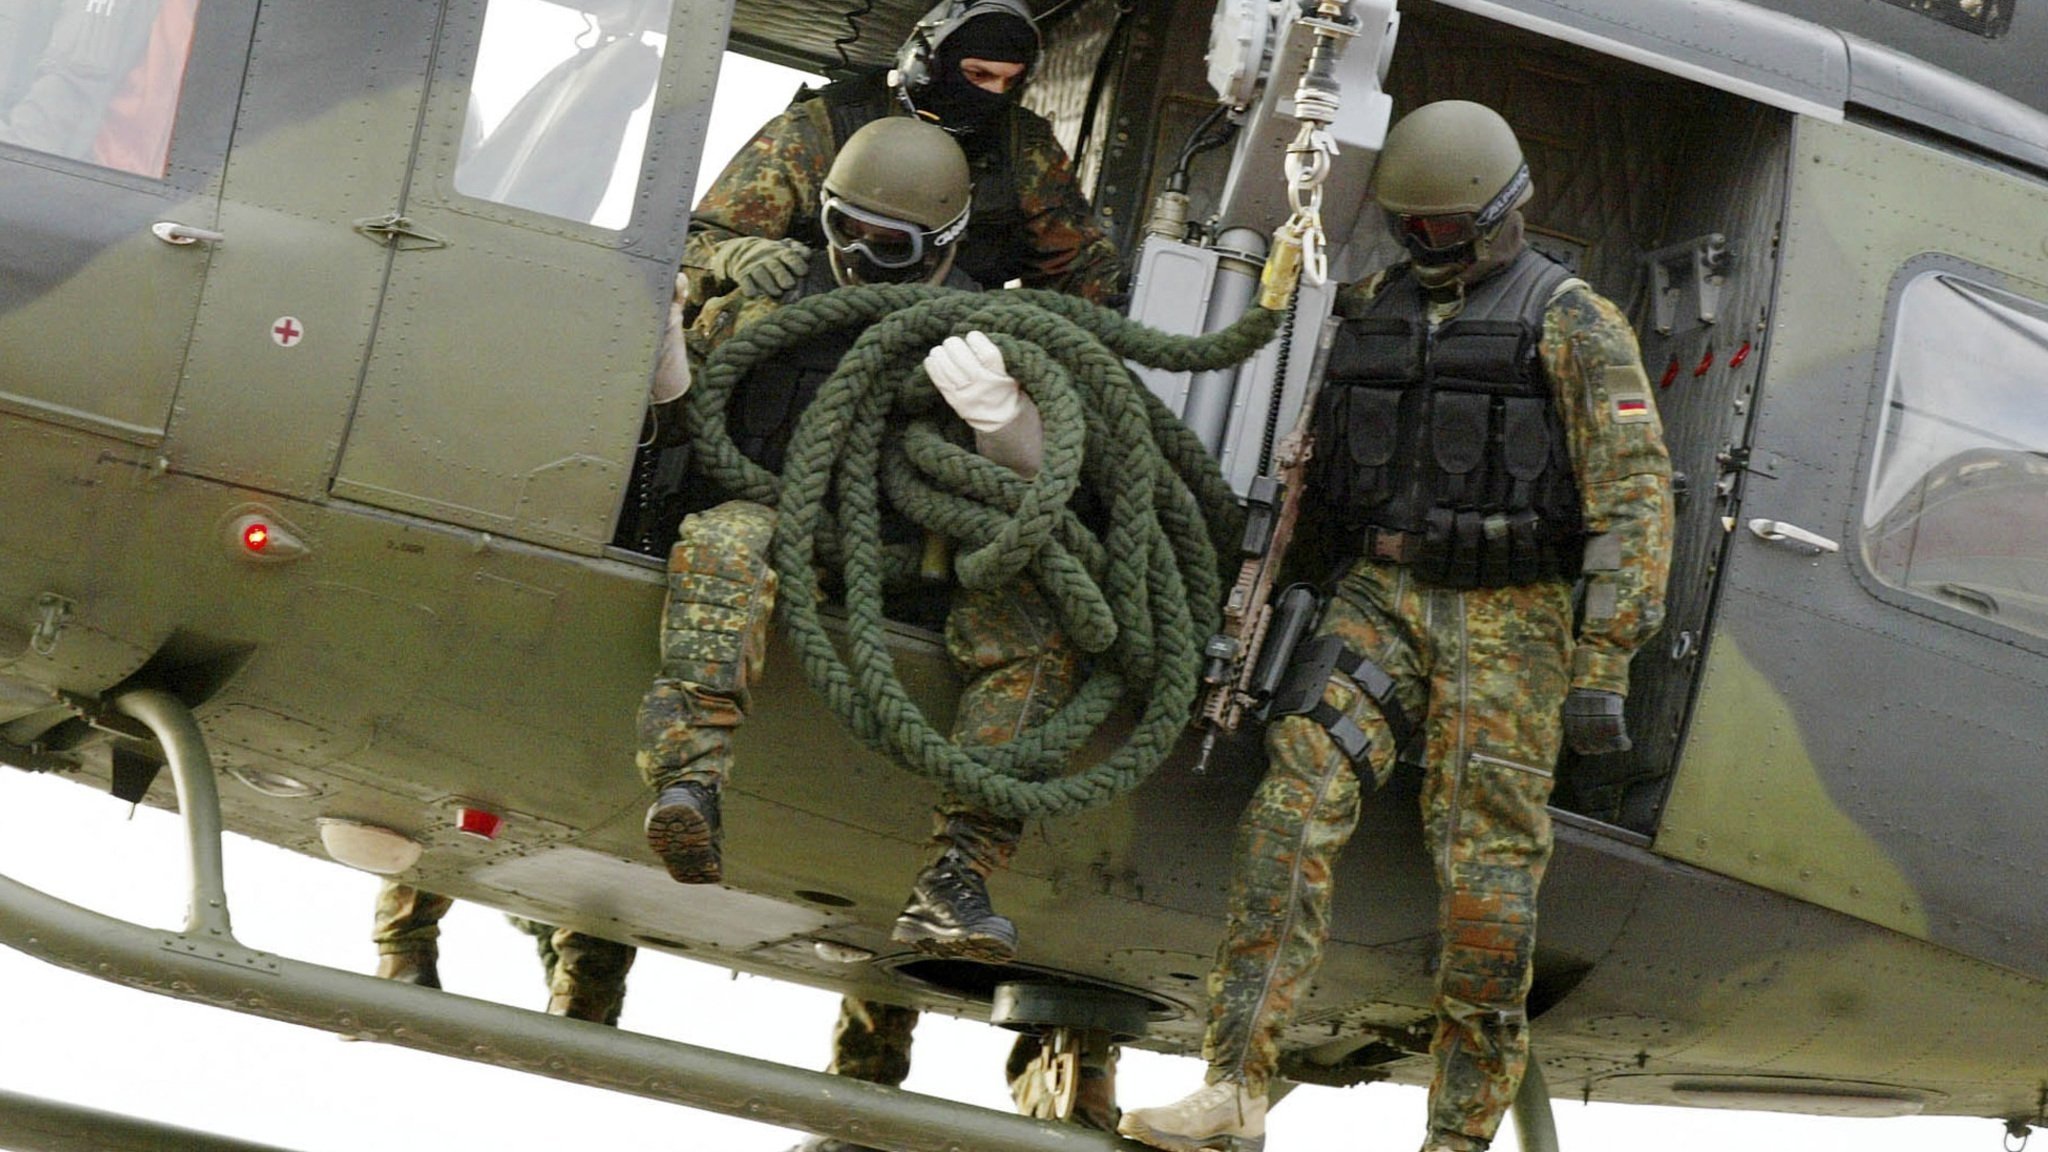 Das OVG NRW hat entschieden: Ein KSK-Soldat bekommt keinen Waffenschein